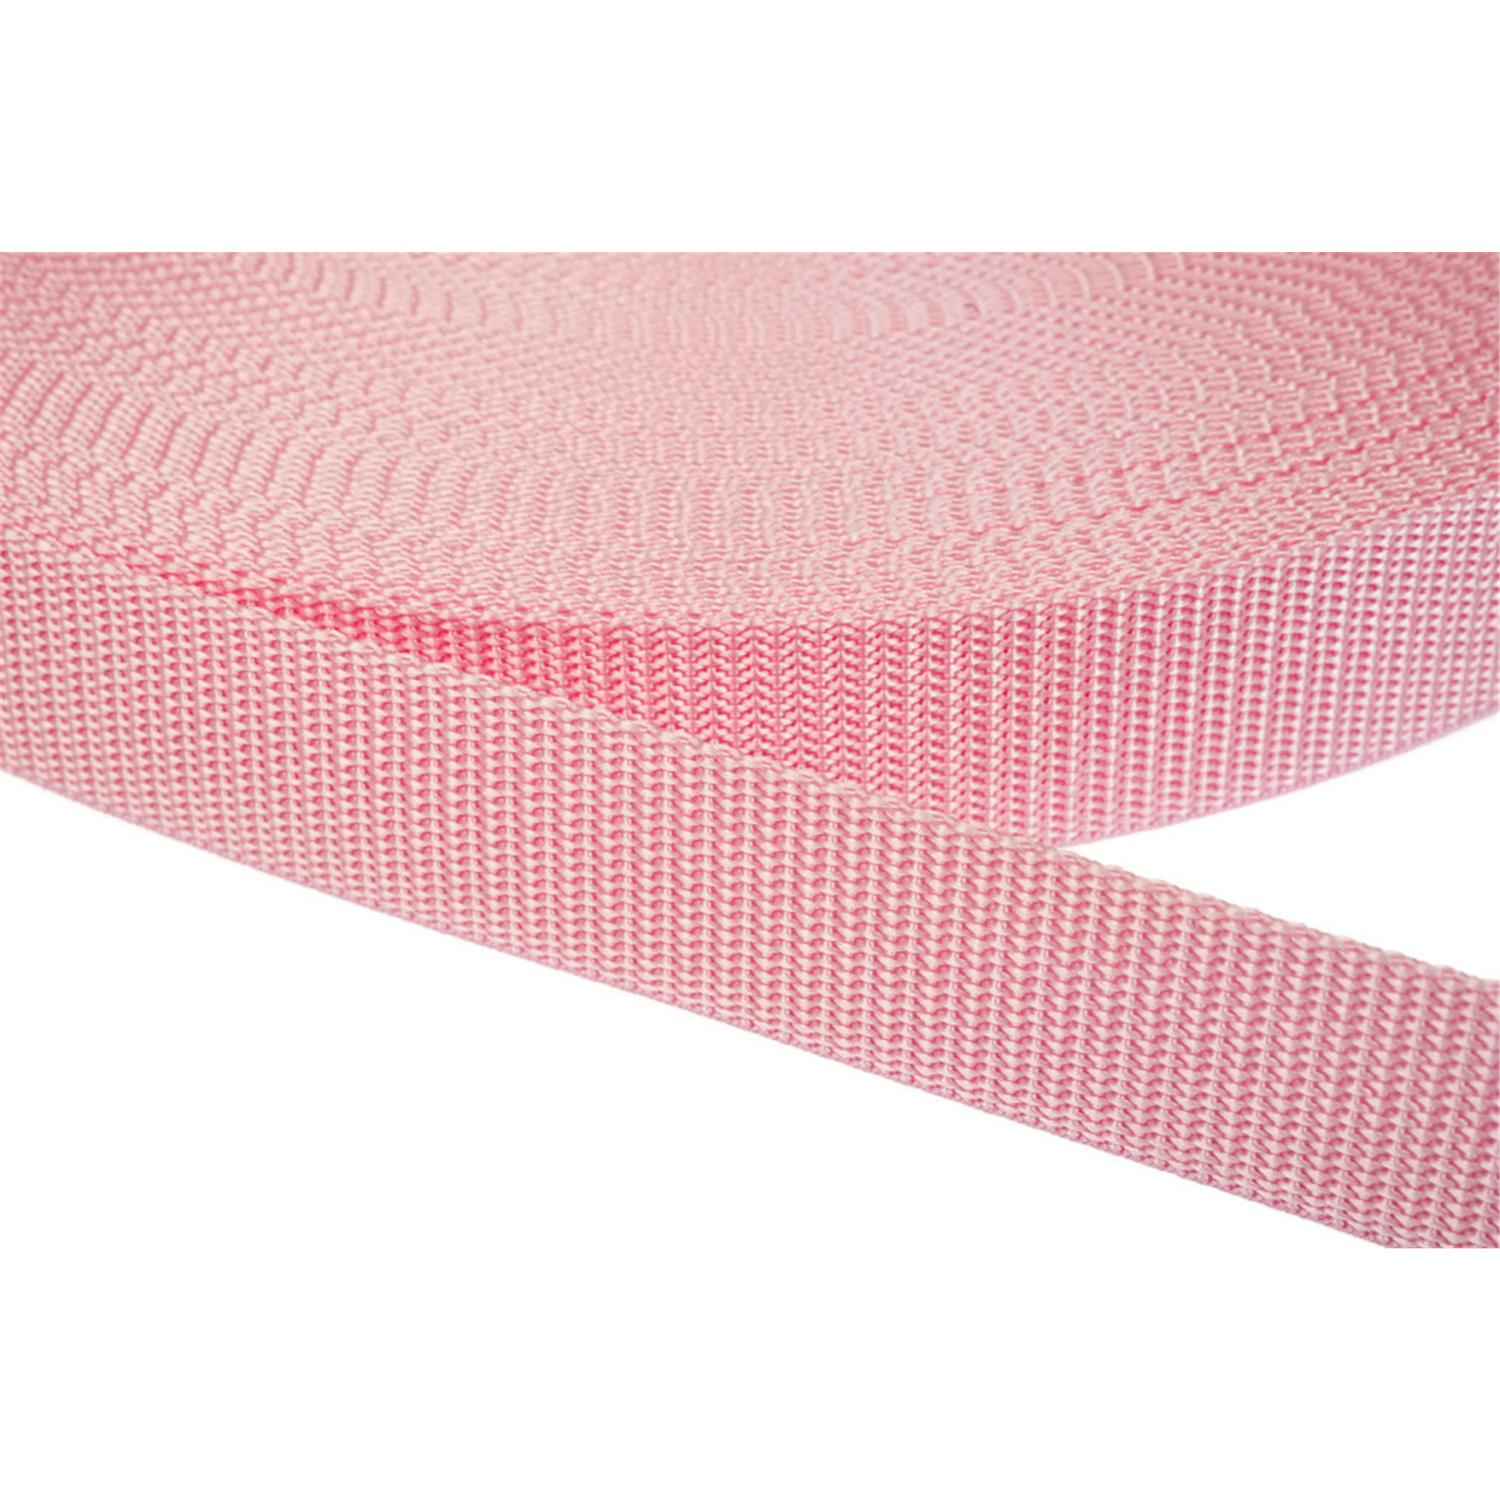 Gurtband 20mm breit aus Polypropylen in 41 Farben 12 - rosa 50 Meter